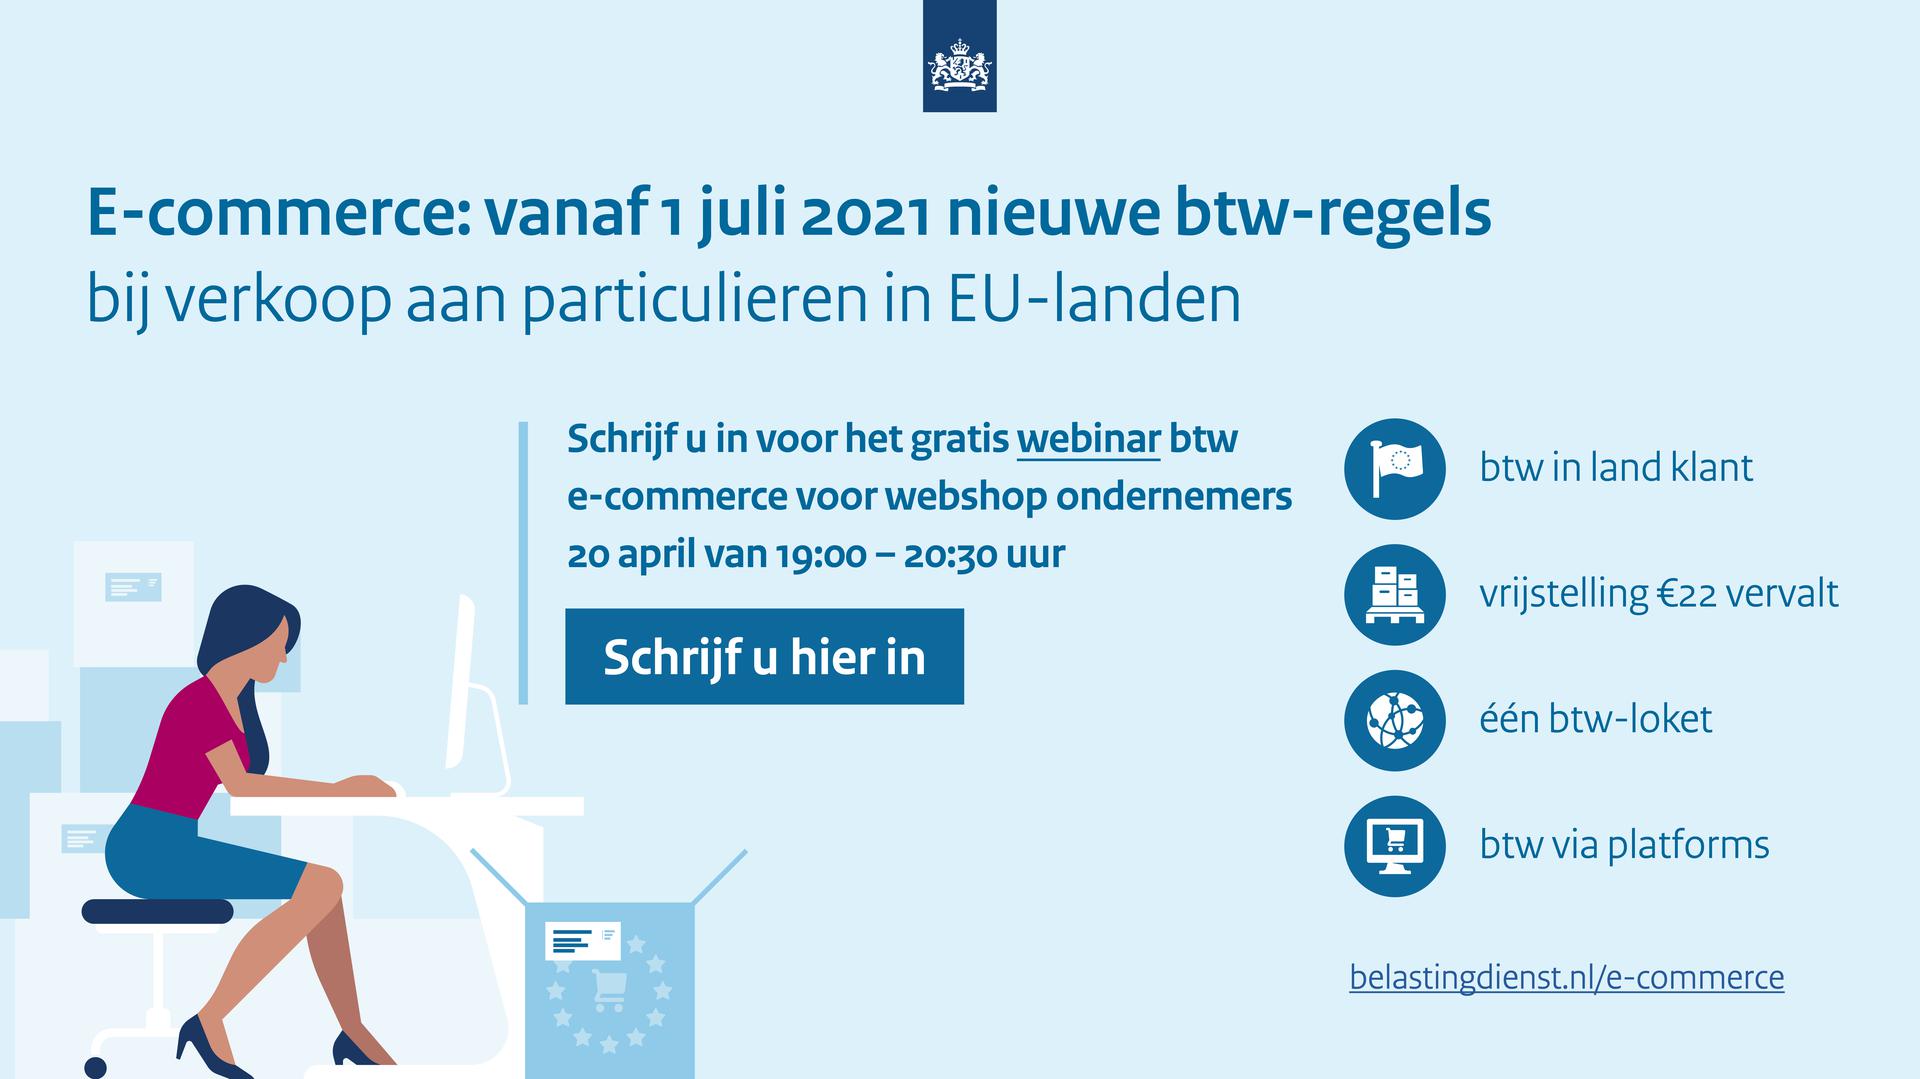 Banner van de Belastingdienst over de nieuwe EU regels voor e-commerce